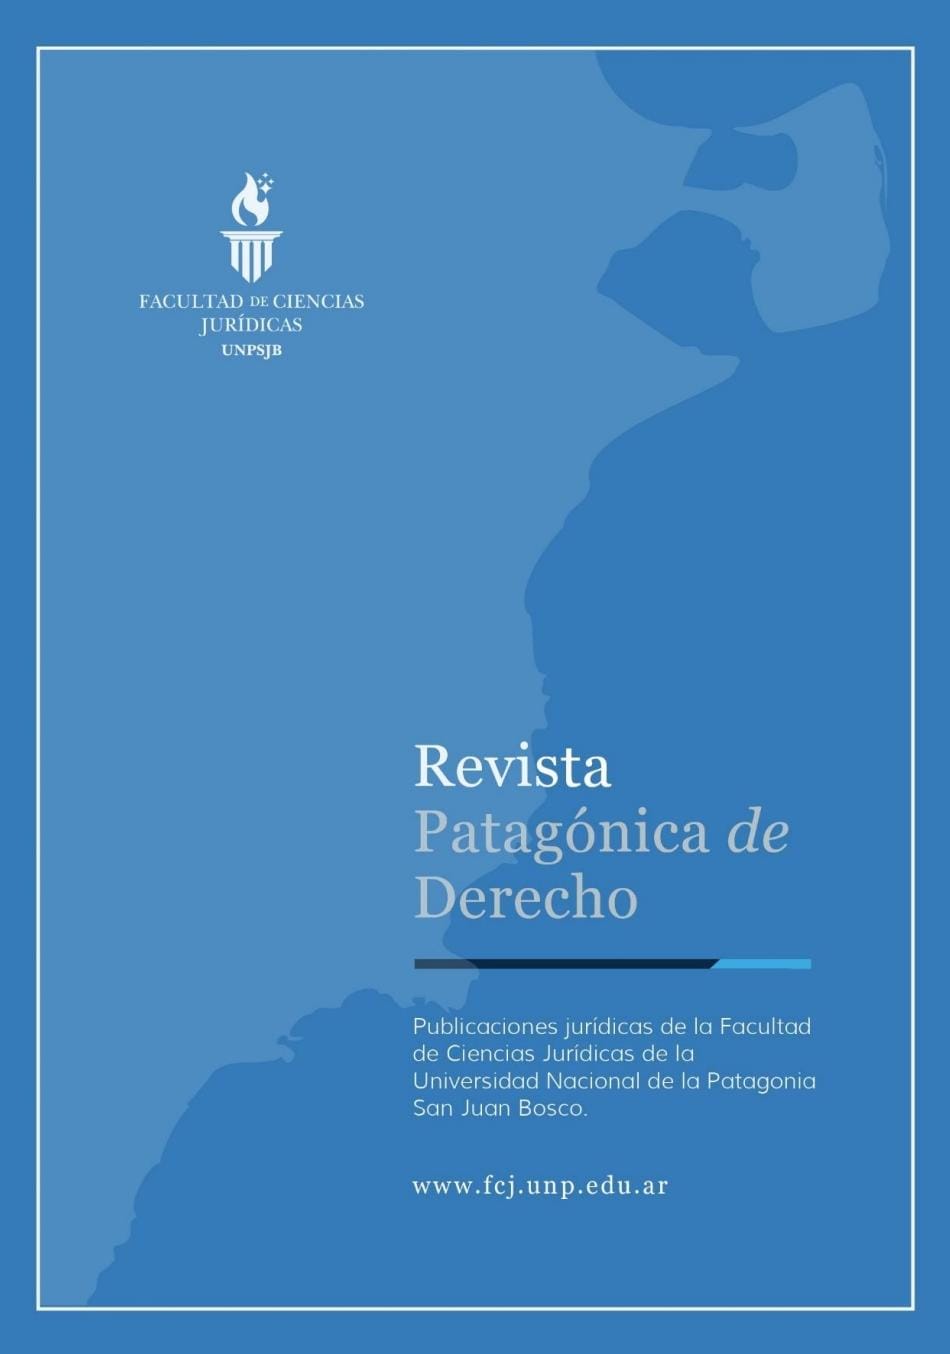 LANZAMIENTO DE LA REVISTA PATAGÓNICA DE DERECHO (rpd)